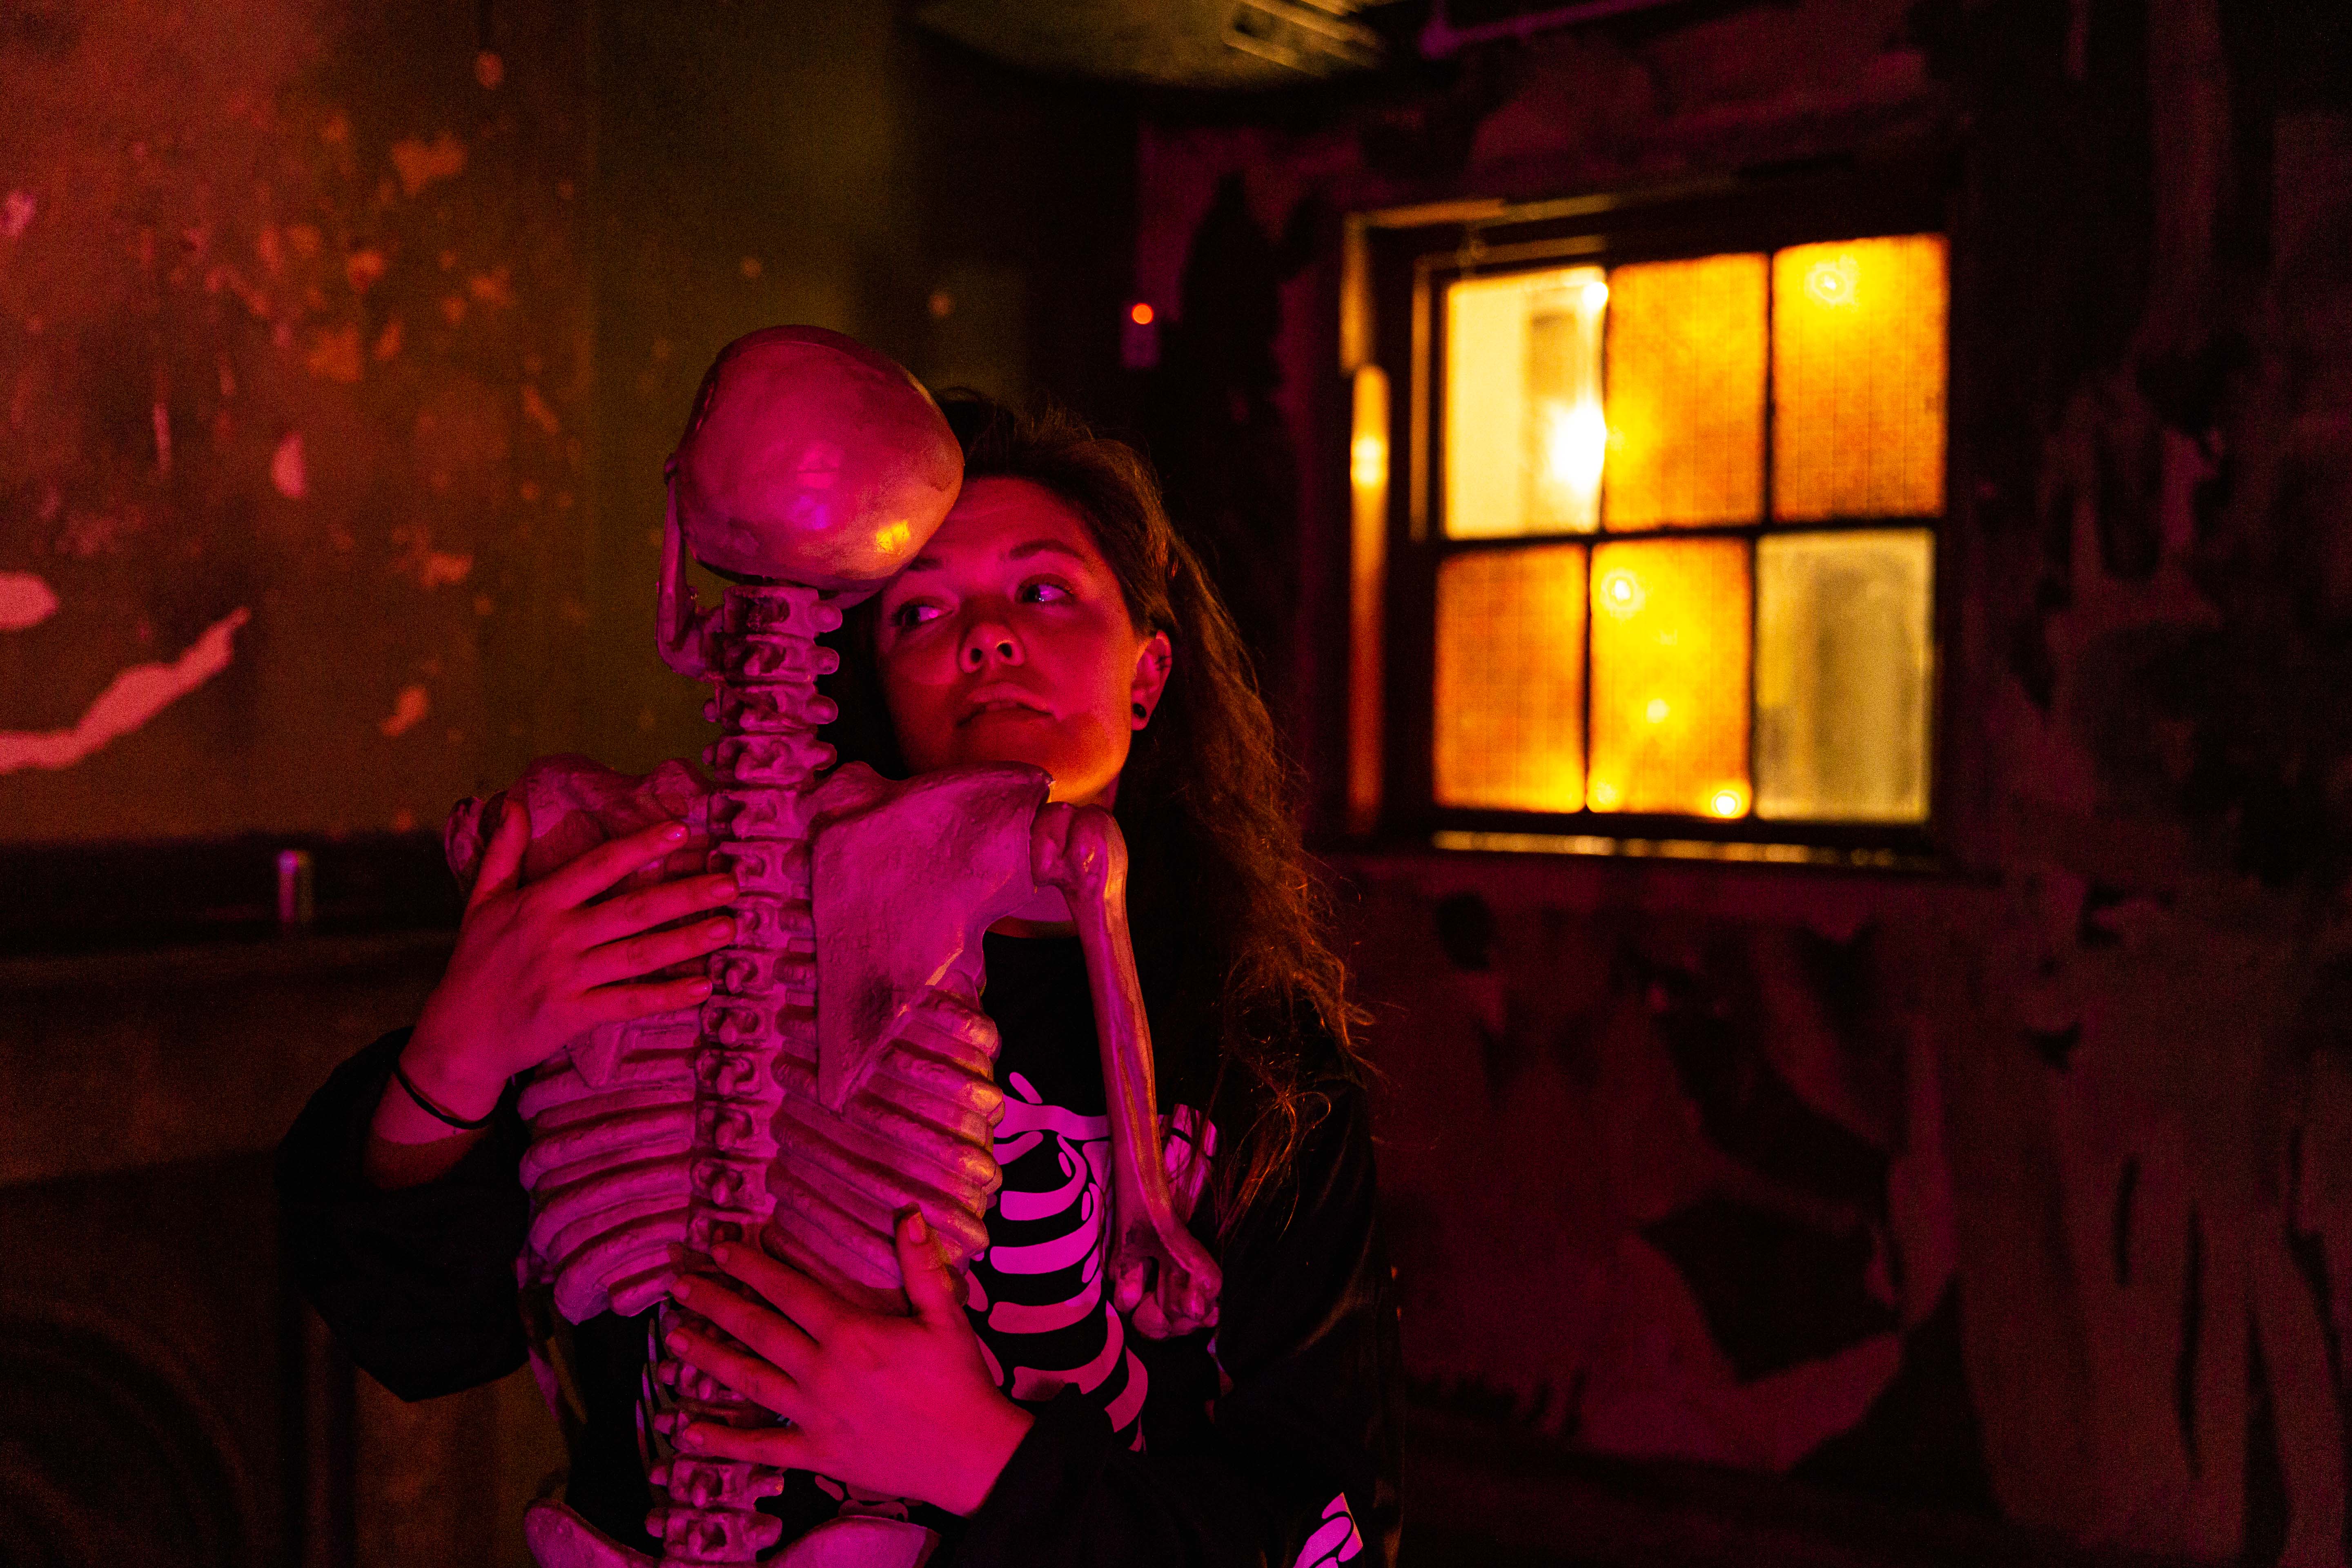 A woman embraces a skeleton